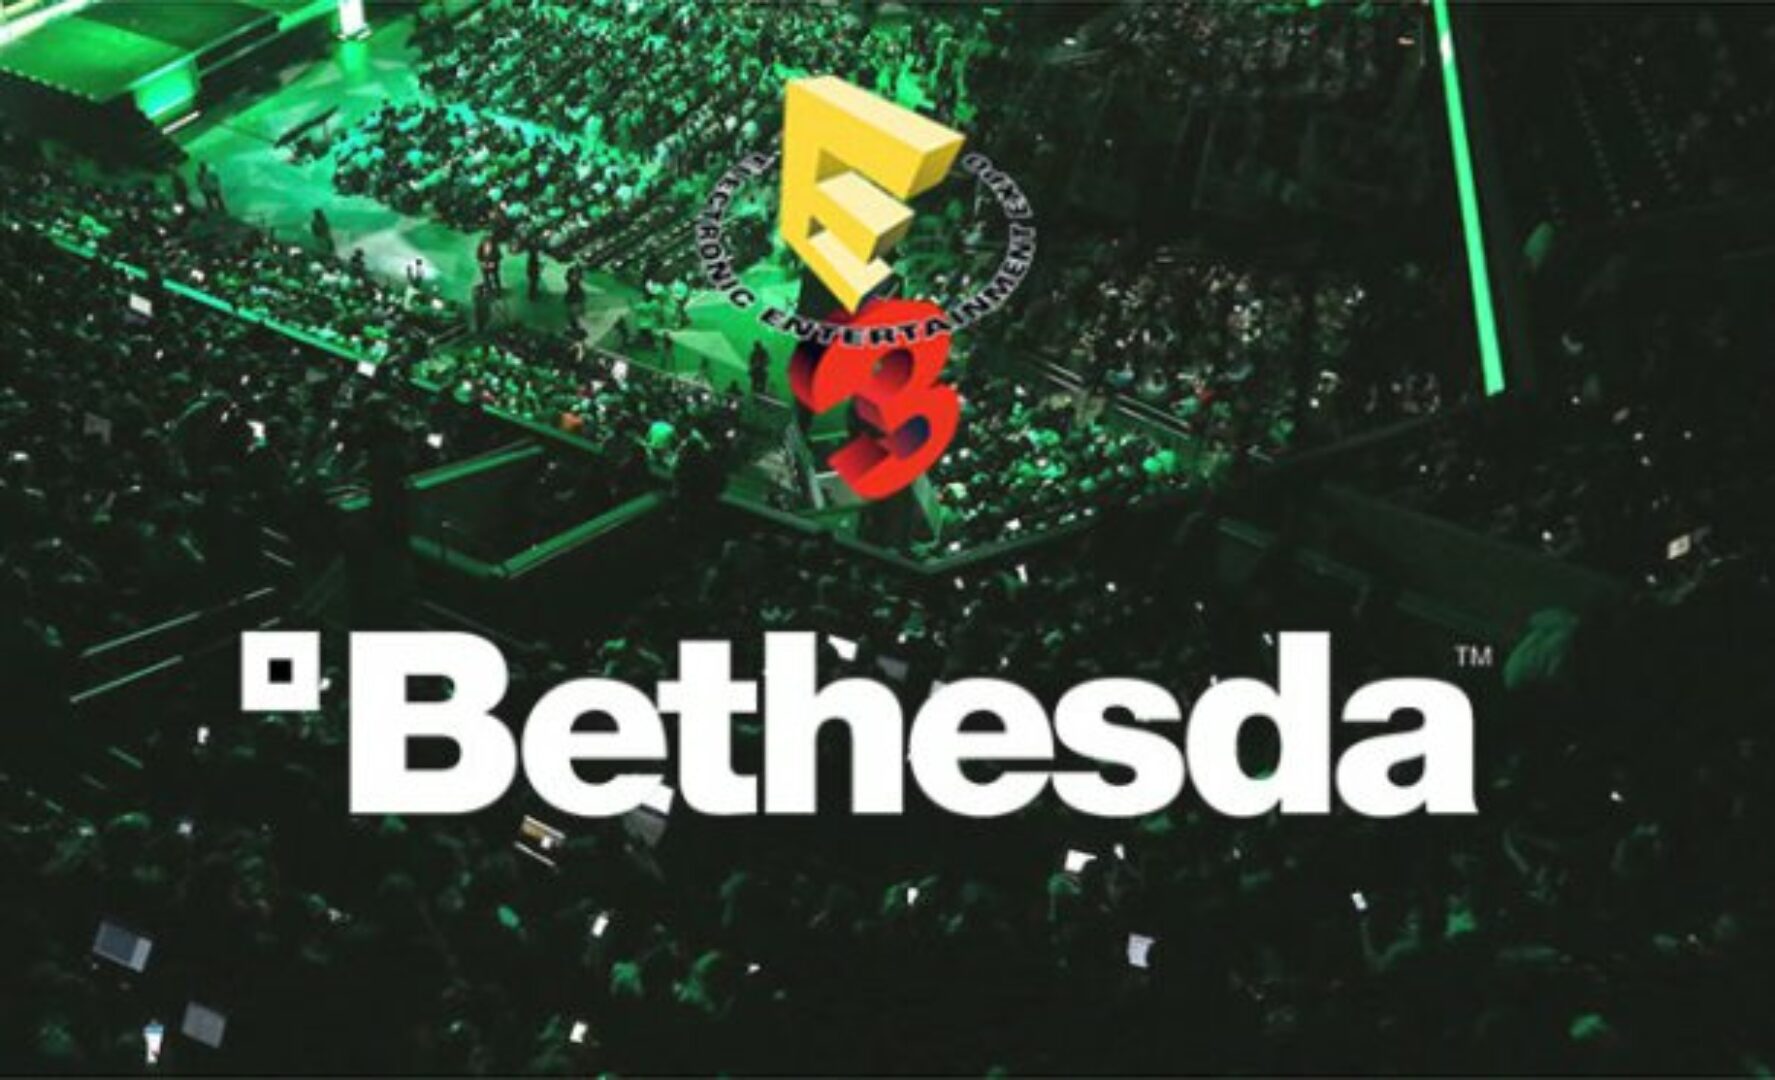 Bethesda E3 2015 Showcase Live Blog